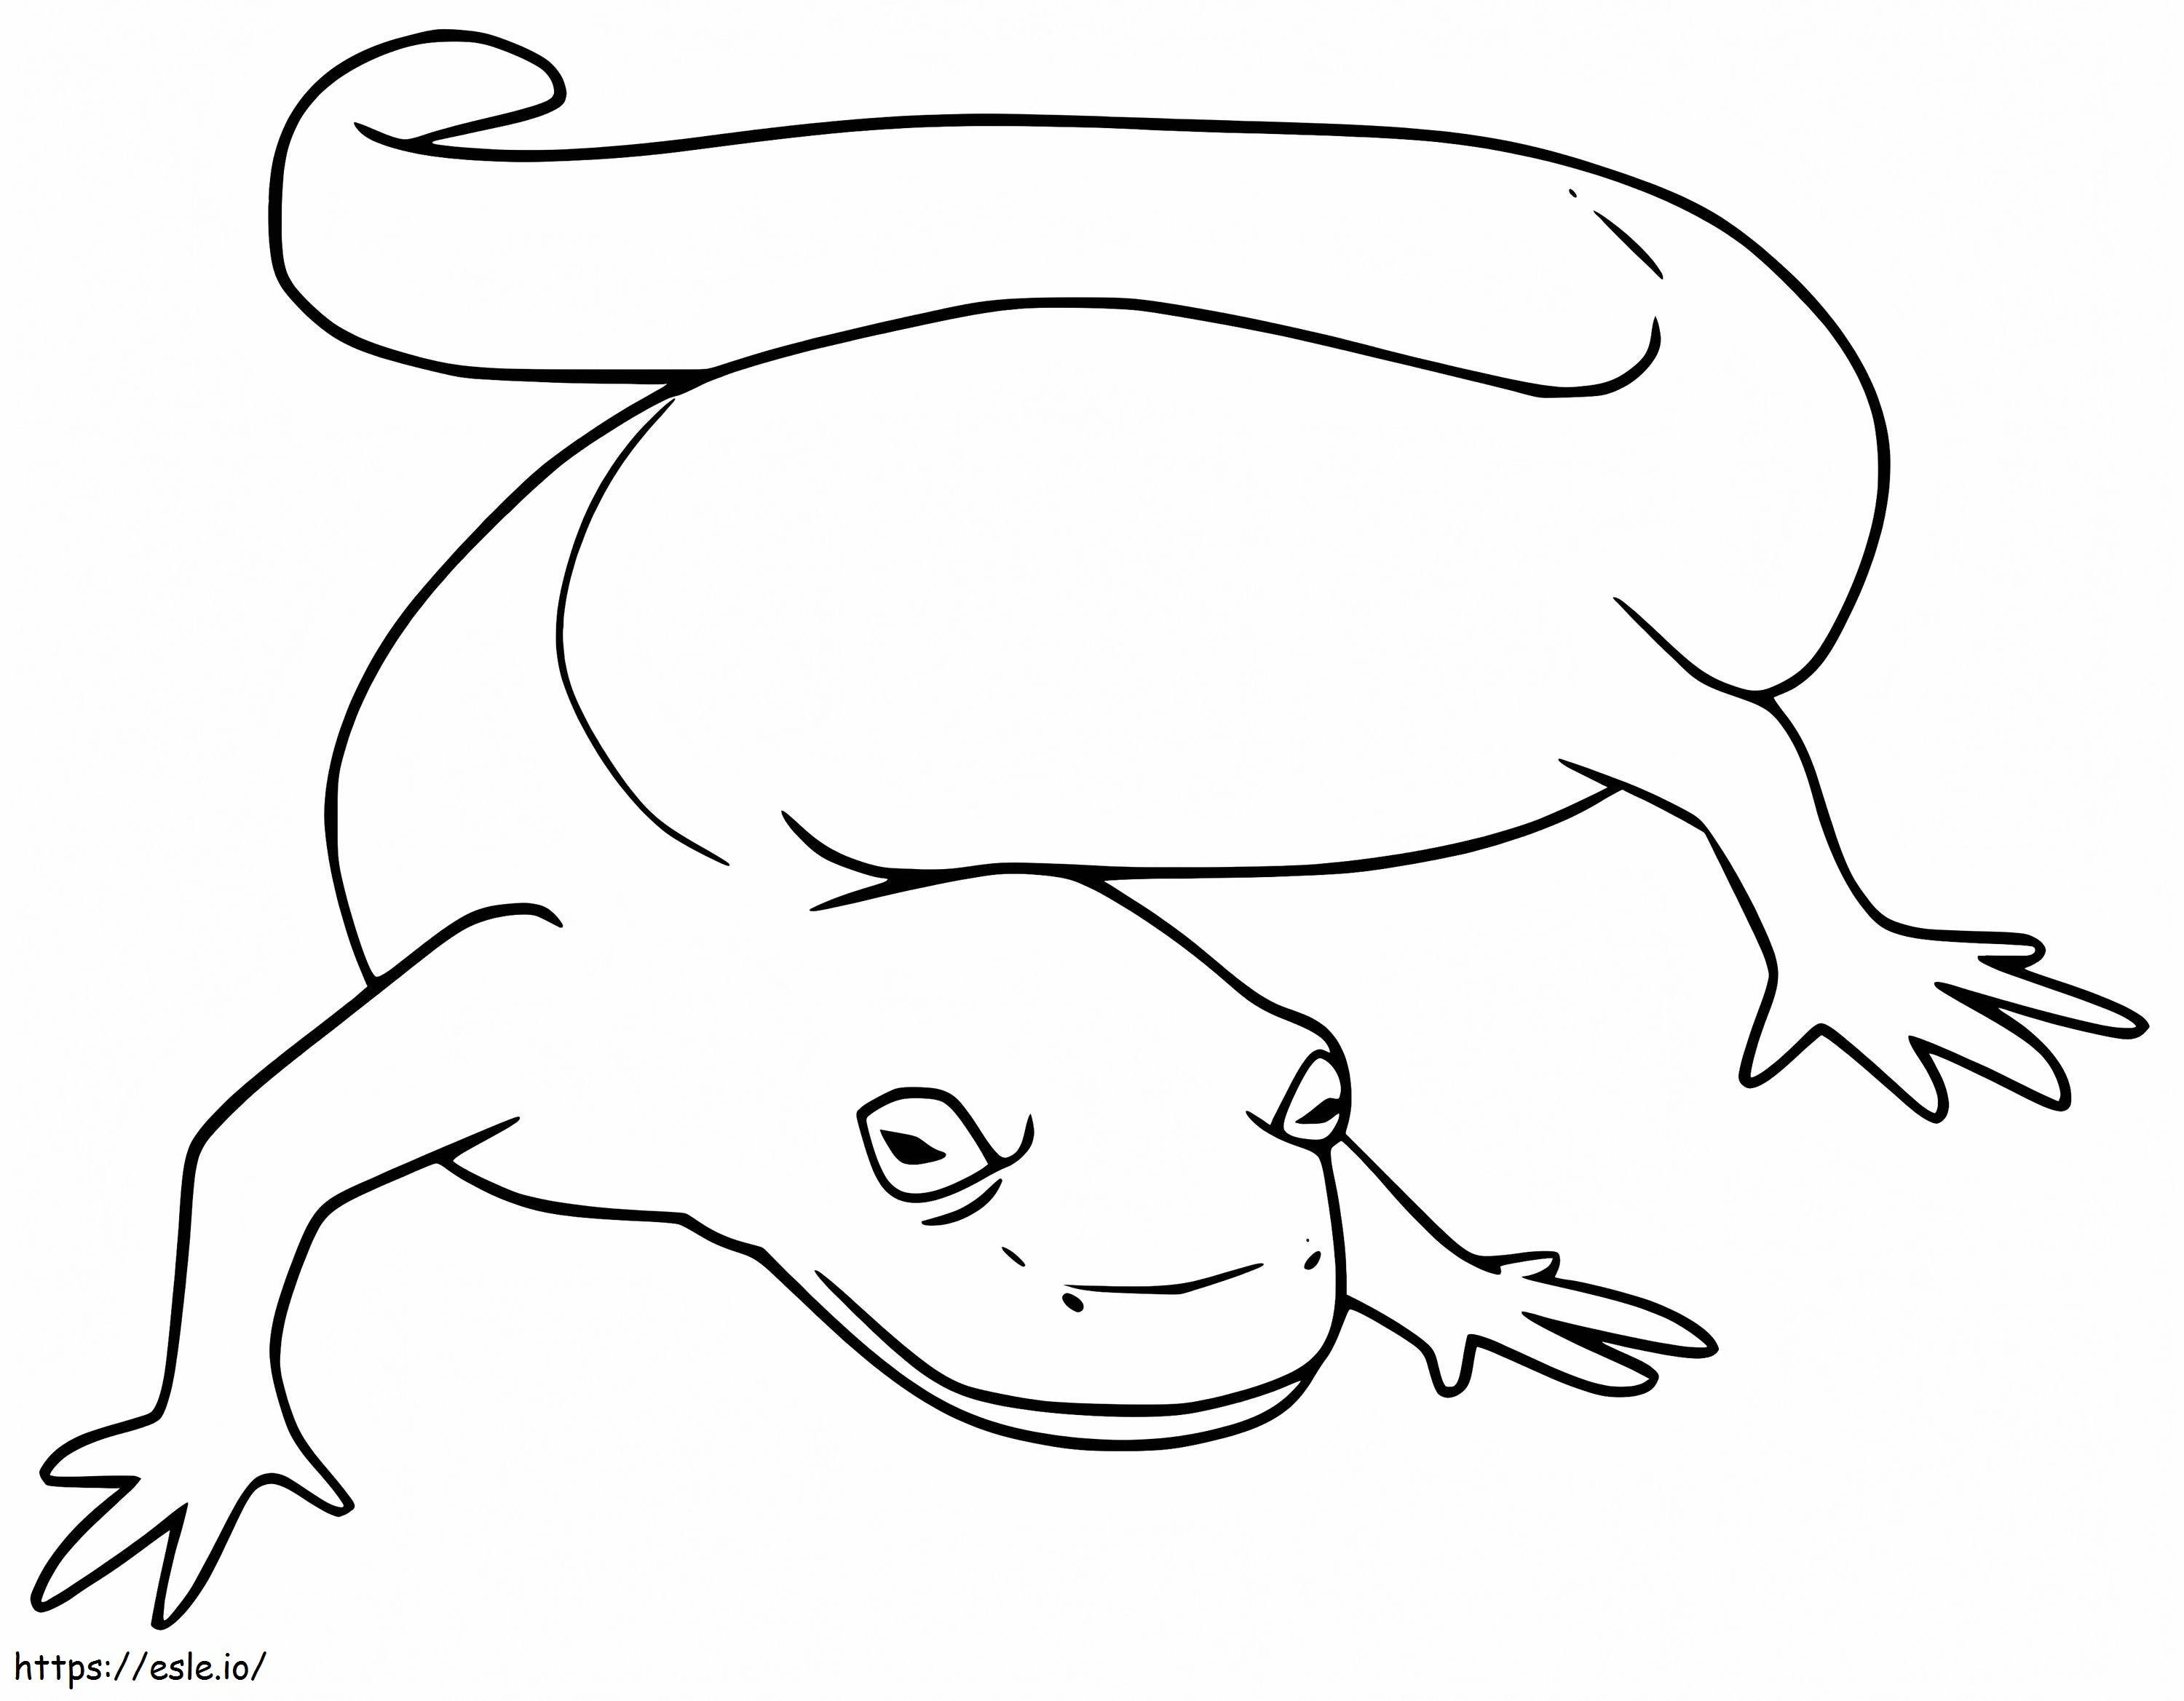 salamandra simples para colorir